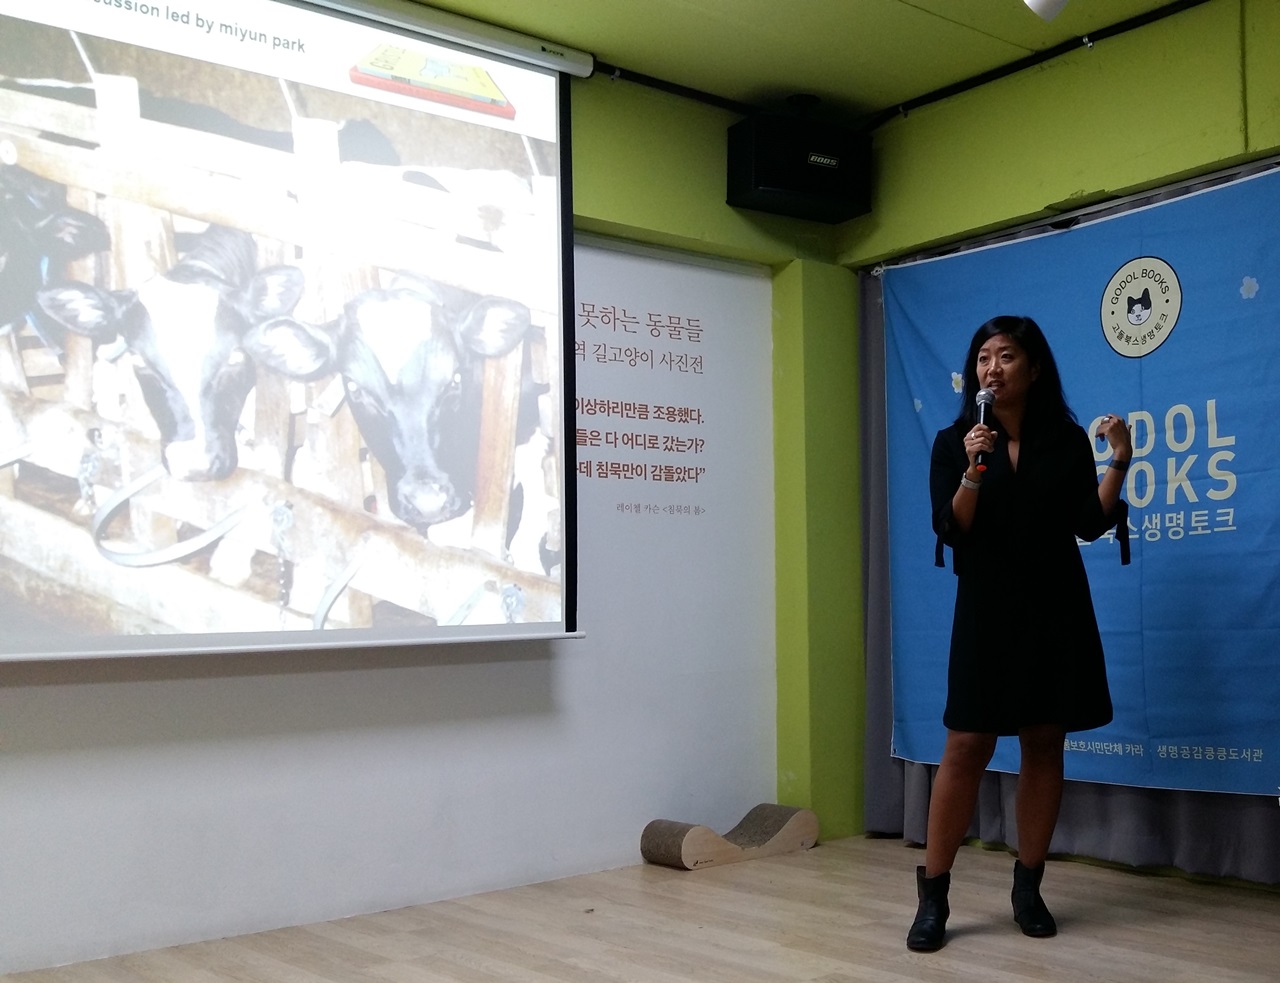 지난 27일, 서울 마포구에 있는 동물보호시민단체 '카라' 더불어숨센터에서 강연을 하는 박미연 활동가.